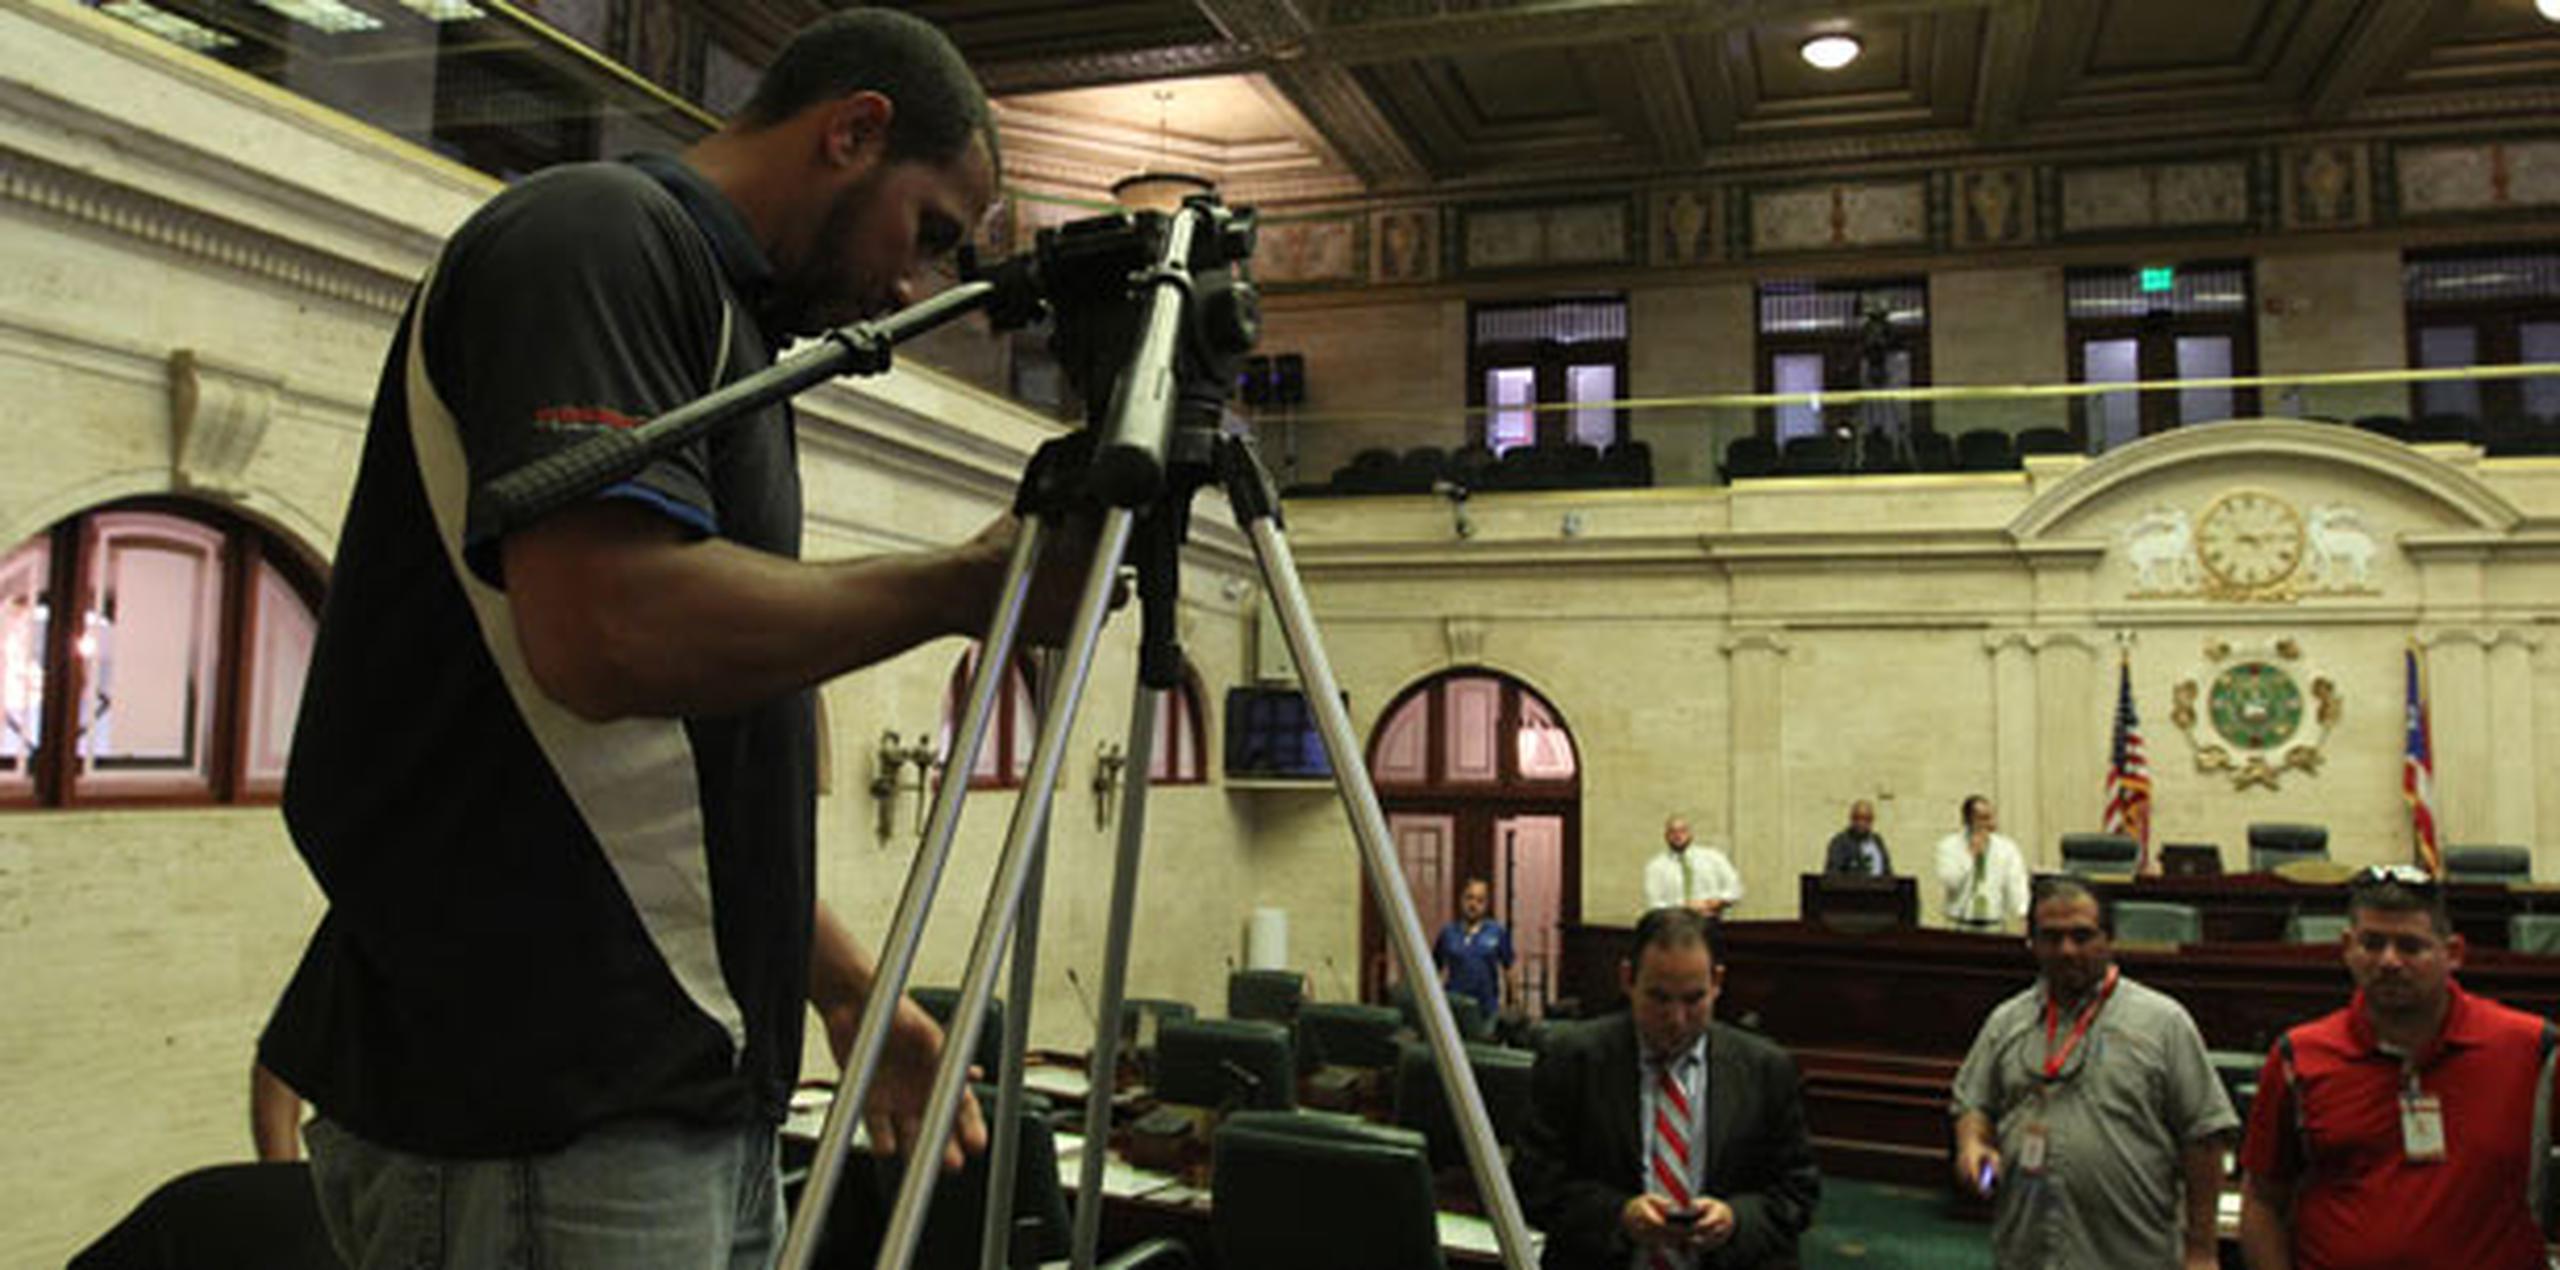 En el hemiciclo de la Cámara de Representantes ya se colocaron varias cámaras que se utilizarán para transmitir en directo el mensaje. (francisco.rodriguez@gfrmedia.com)